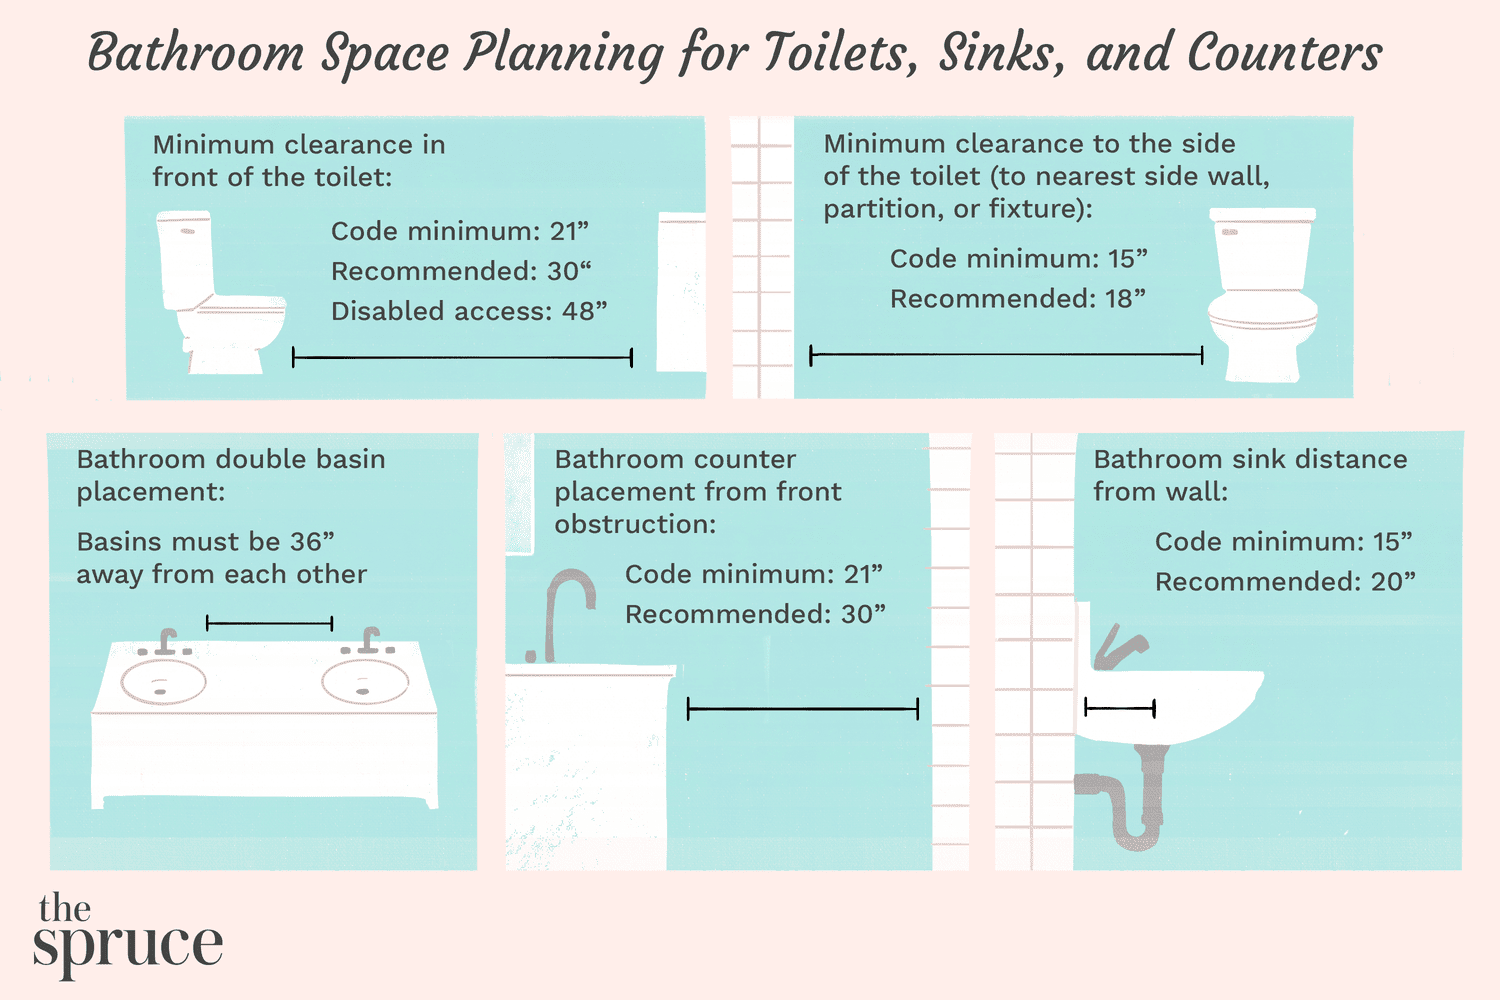 Planejamento do espaço do banheiro para vasos sanitários, pias e balcões